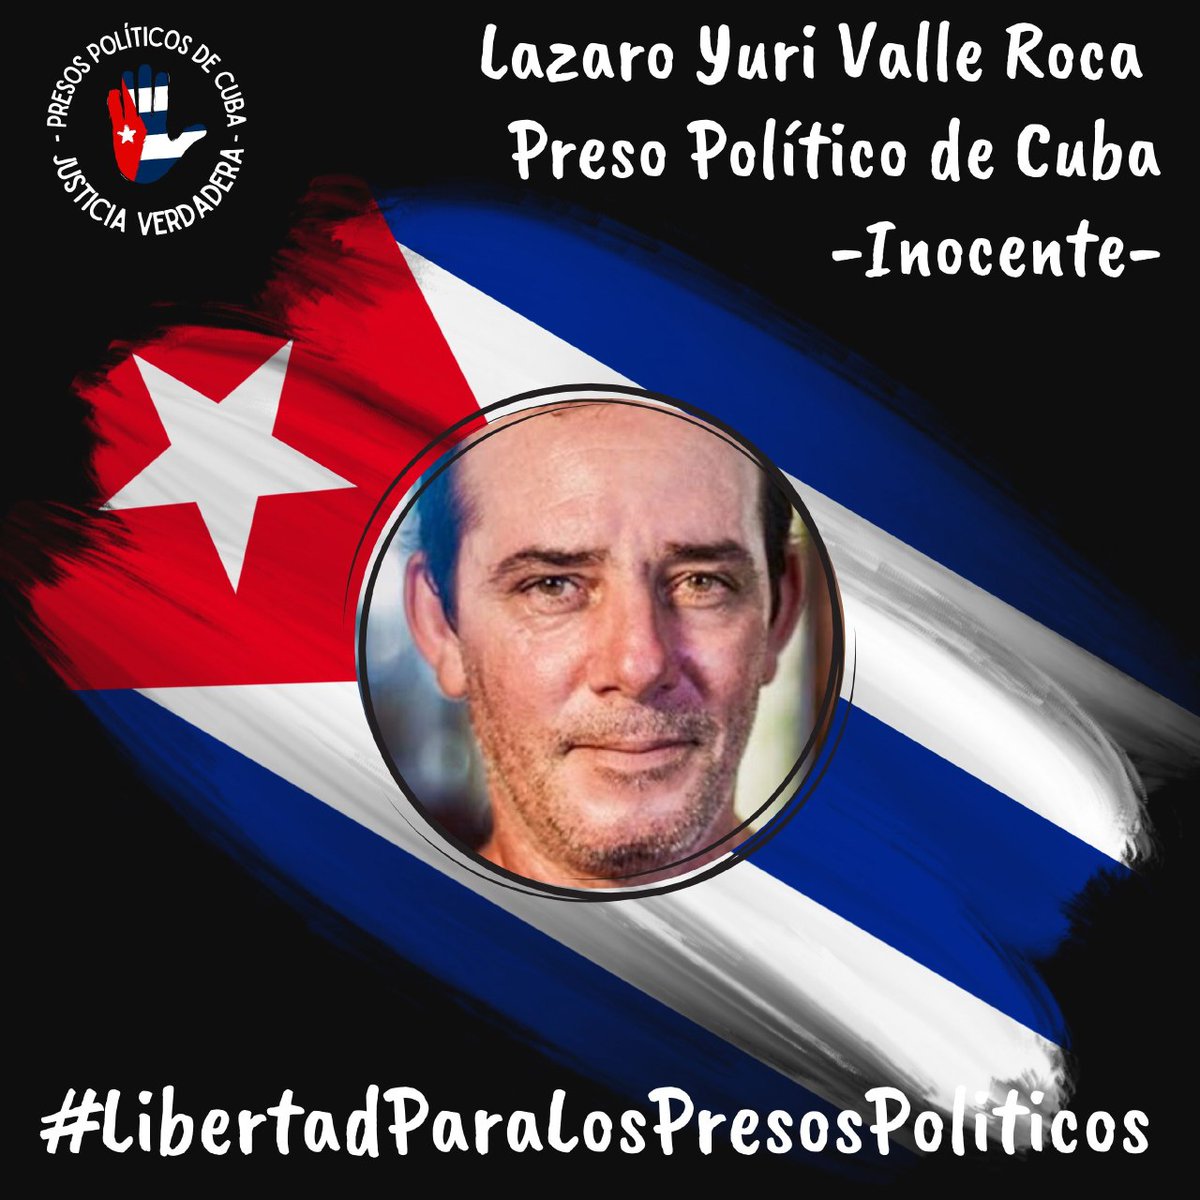 #Twittazo por los #PresosDeCastro 
🇨🇺⛓️💪🏻Libertad para Lazaro Yuri Valle Roca. No lo dejemos solo.
.
.
.
#HastaQueSeanLibres 
#PresosPoliticosDeCuba 
#LibertadParaLosPresosPoliticos